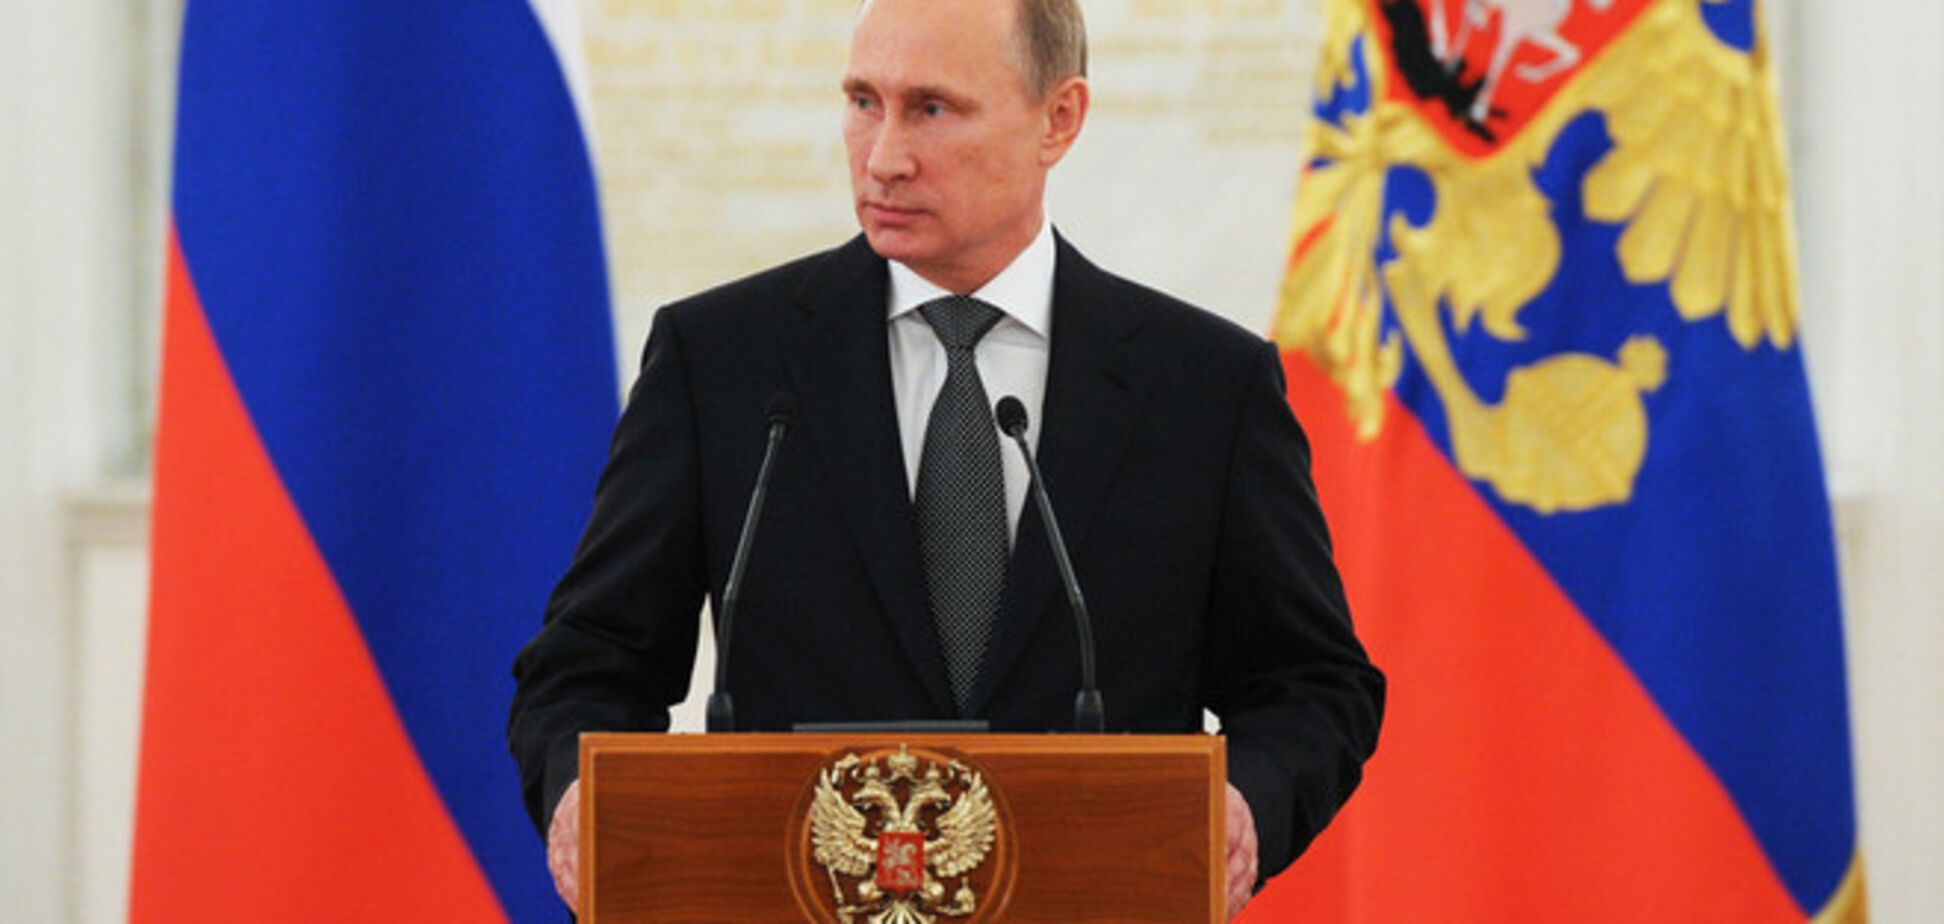 Увлекшийся Украиной Путин проиграл Китаю в борьбе за Центральную Азию - Bloomberg